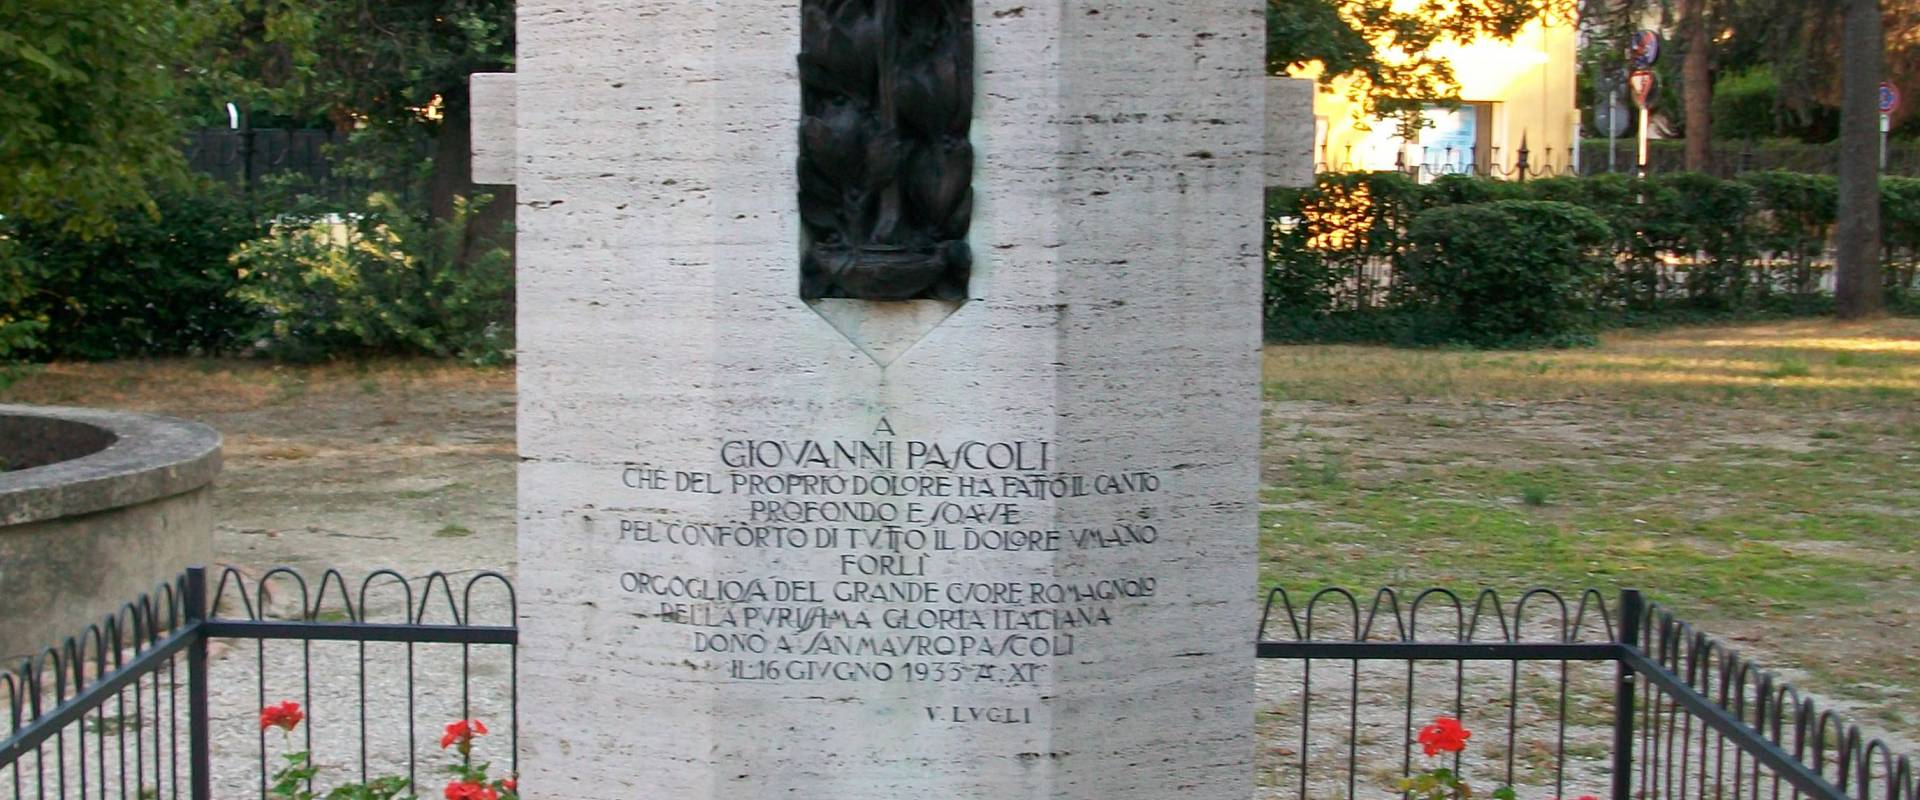 Monumento a Giovanni Pascoli nel giardino della casa photo by Pincez79